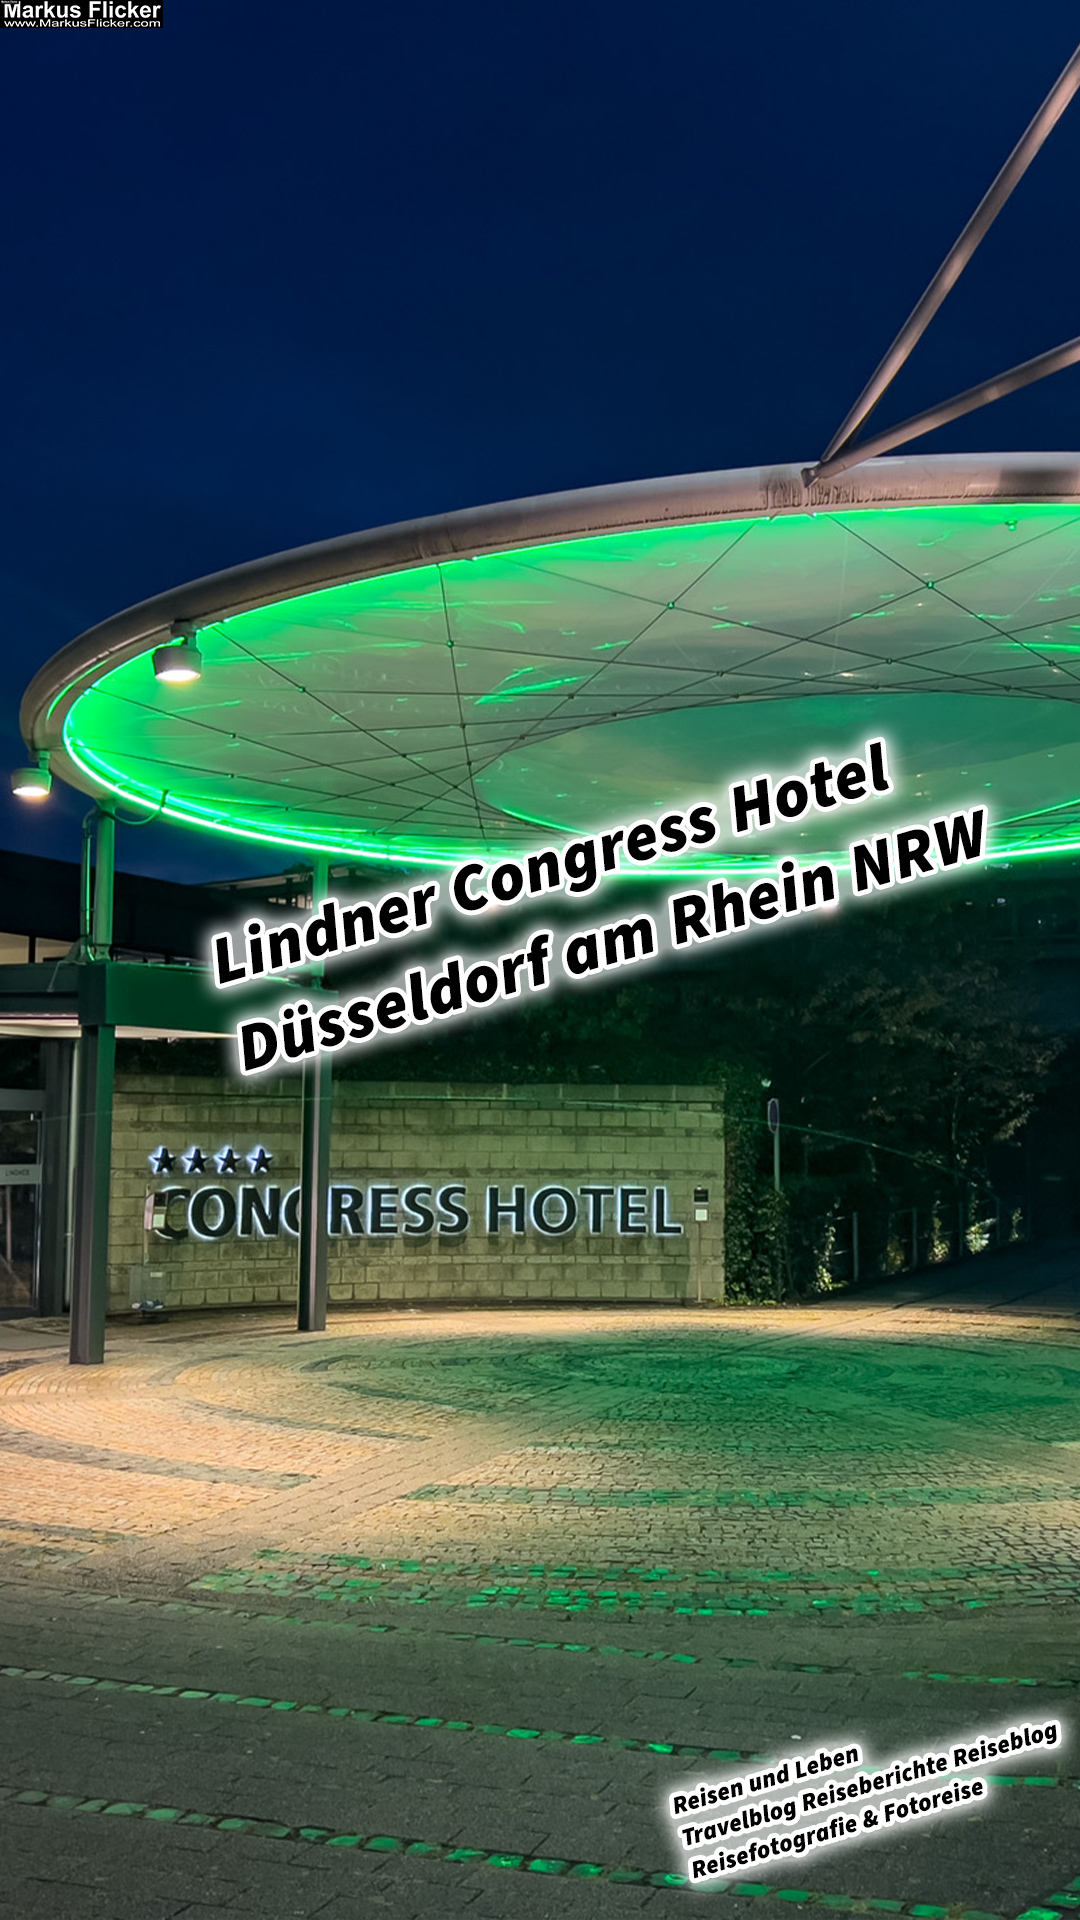 Lindner Congress Hotel Düsseldorf am Rhein NRW